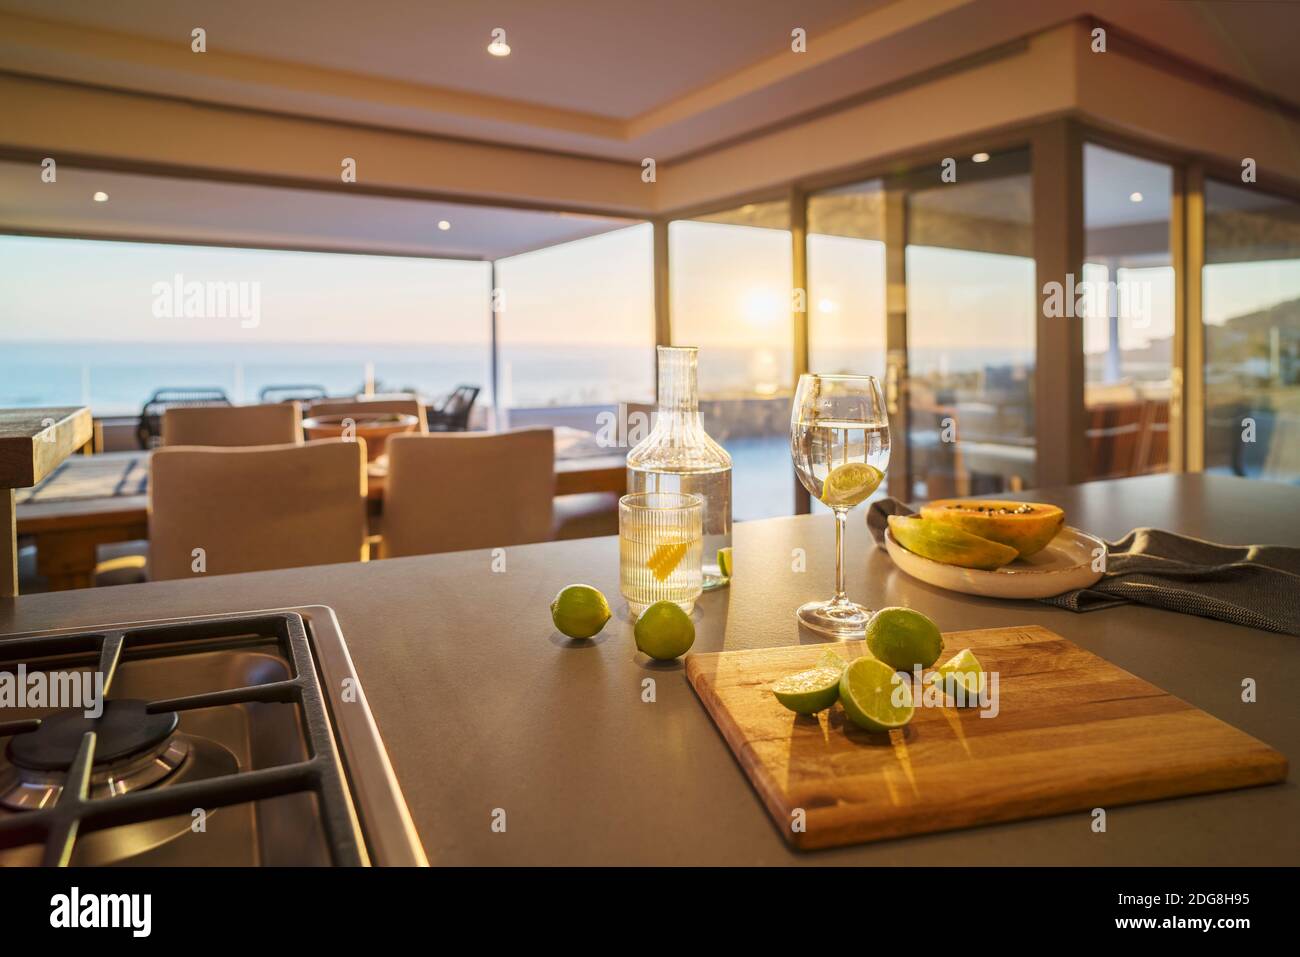 De l'eau et des tranches de citron vert frais sur un comptoir de cuisine de luxe avec vue sur l'océan Banque D'Images